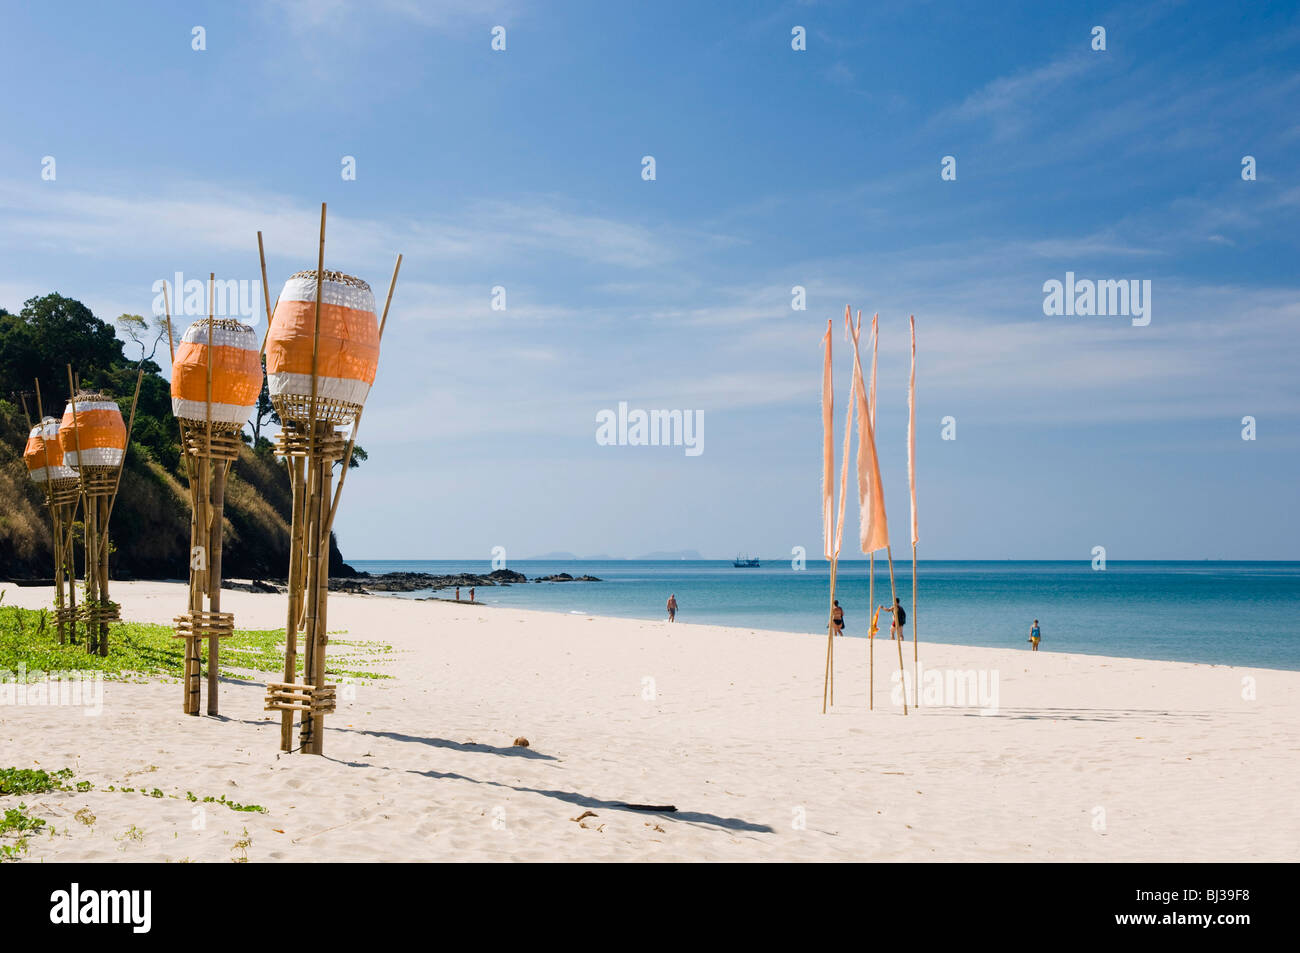 Lanterns on the sandy beach, Kantiang Beach, Ko Lanta or Koh Lanta island, Krabi, Thailand, Asia Stock Photo